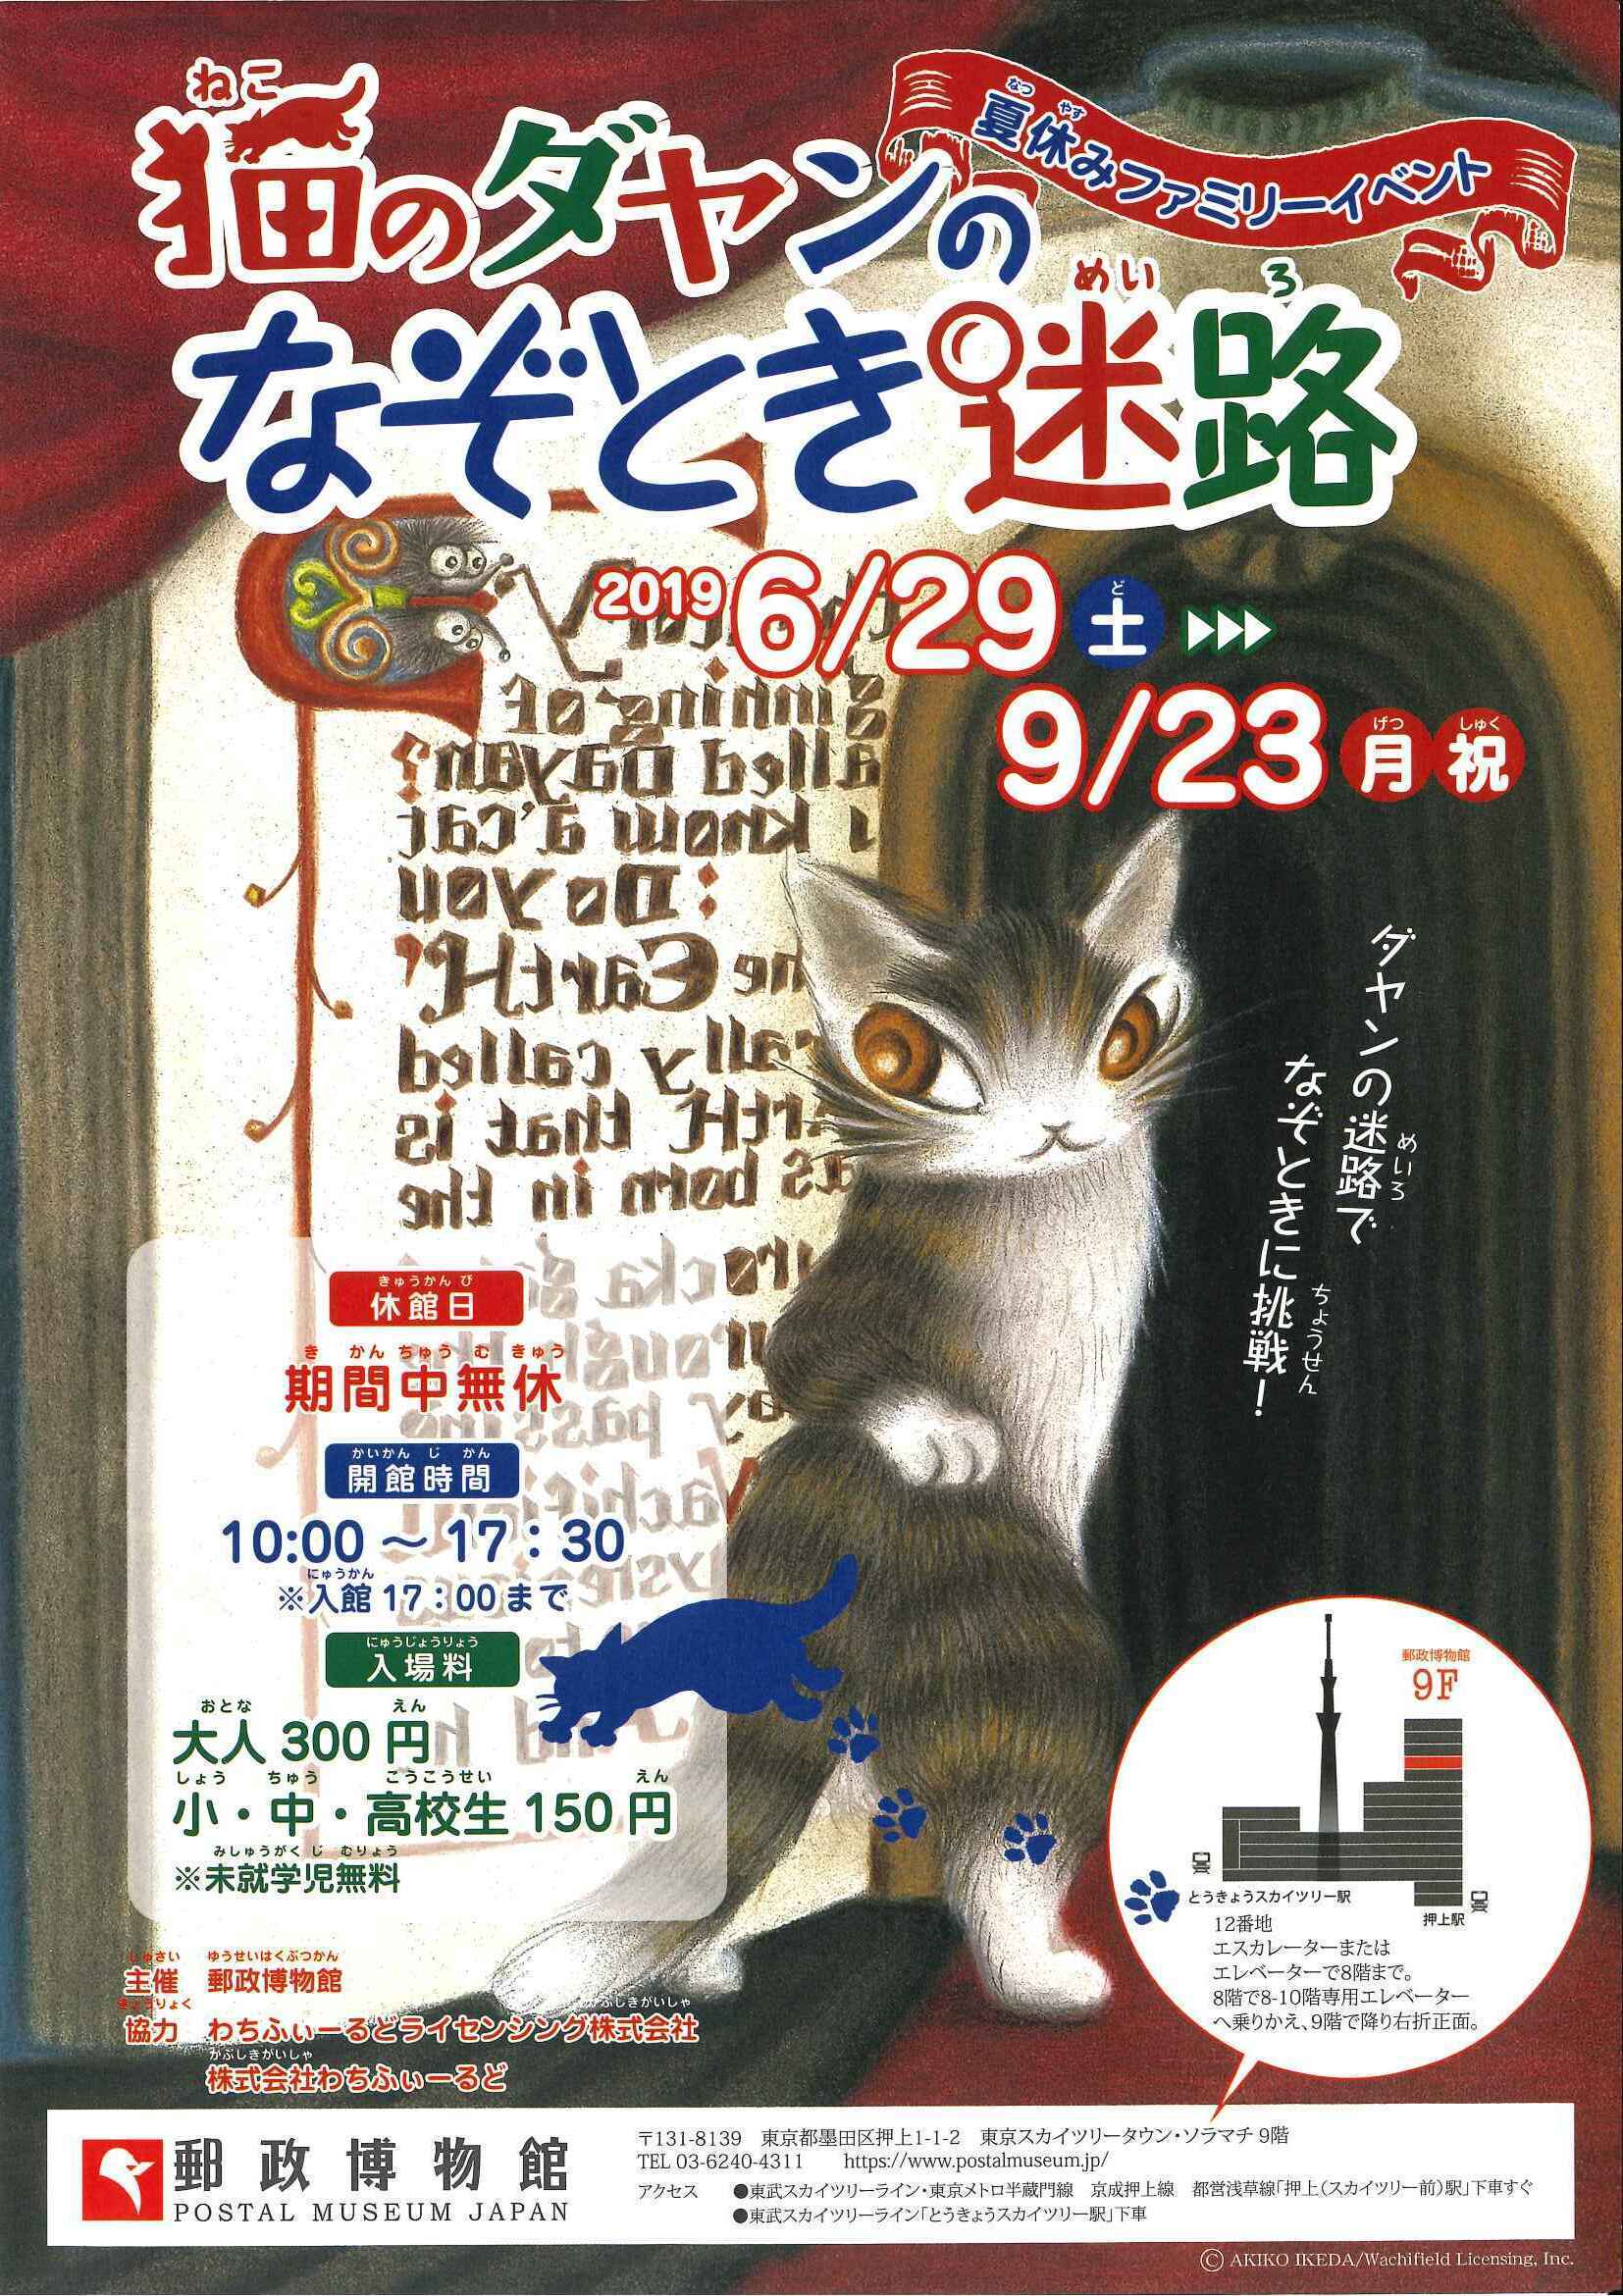 コラボ商品第4弾 猫のダヤン のトイレットペーパーカバー 全8種を全国のガチャガチャで7月8日に発売 有限会社トミヤのプレスリリース